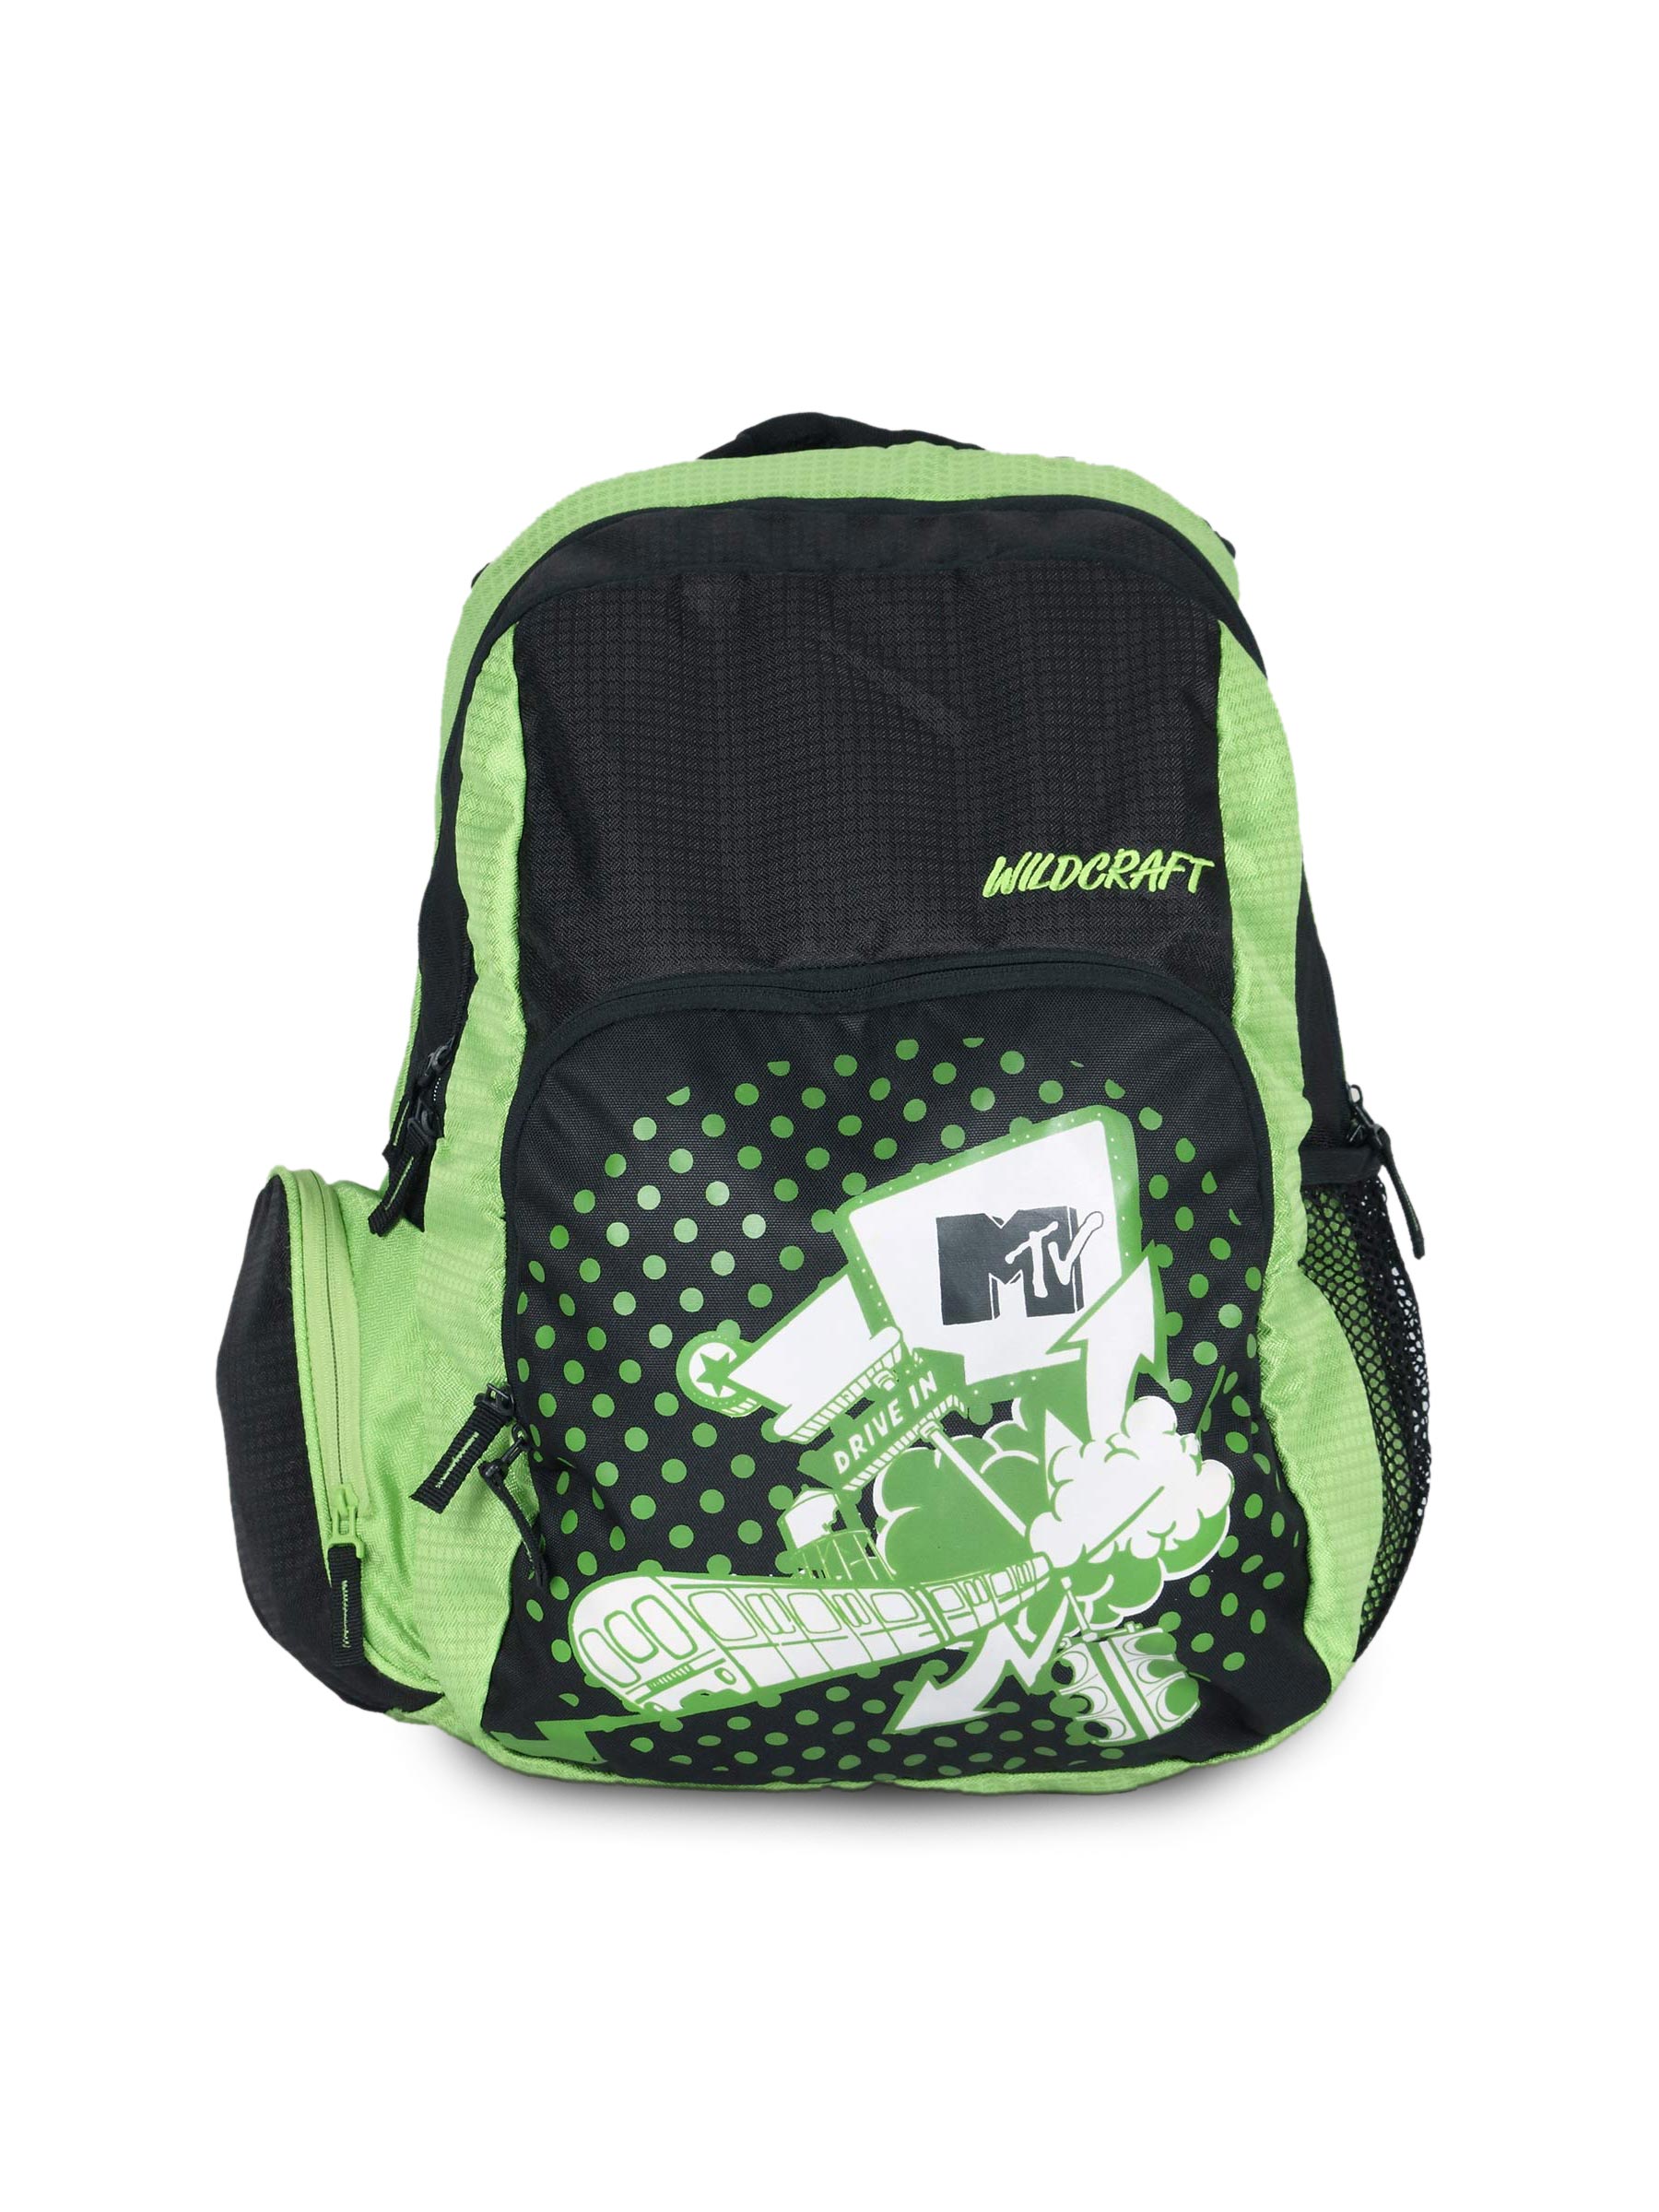 Wildcraft Unisex Black & Green Printed Laptop Backpack